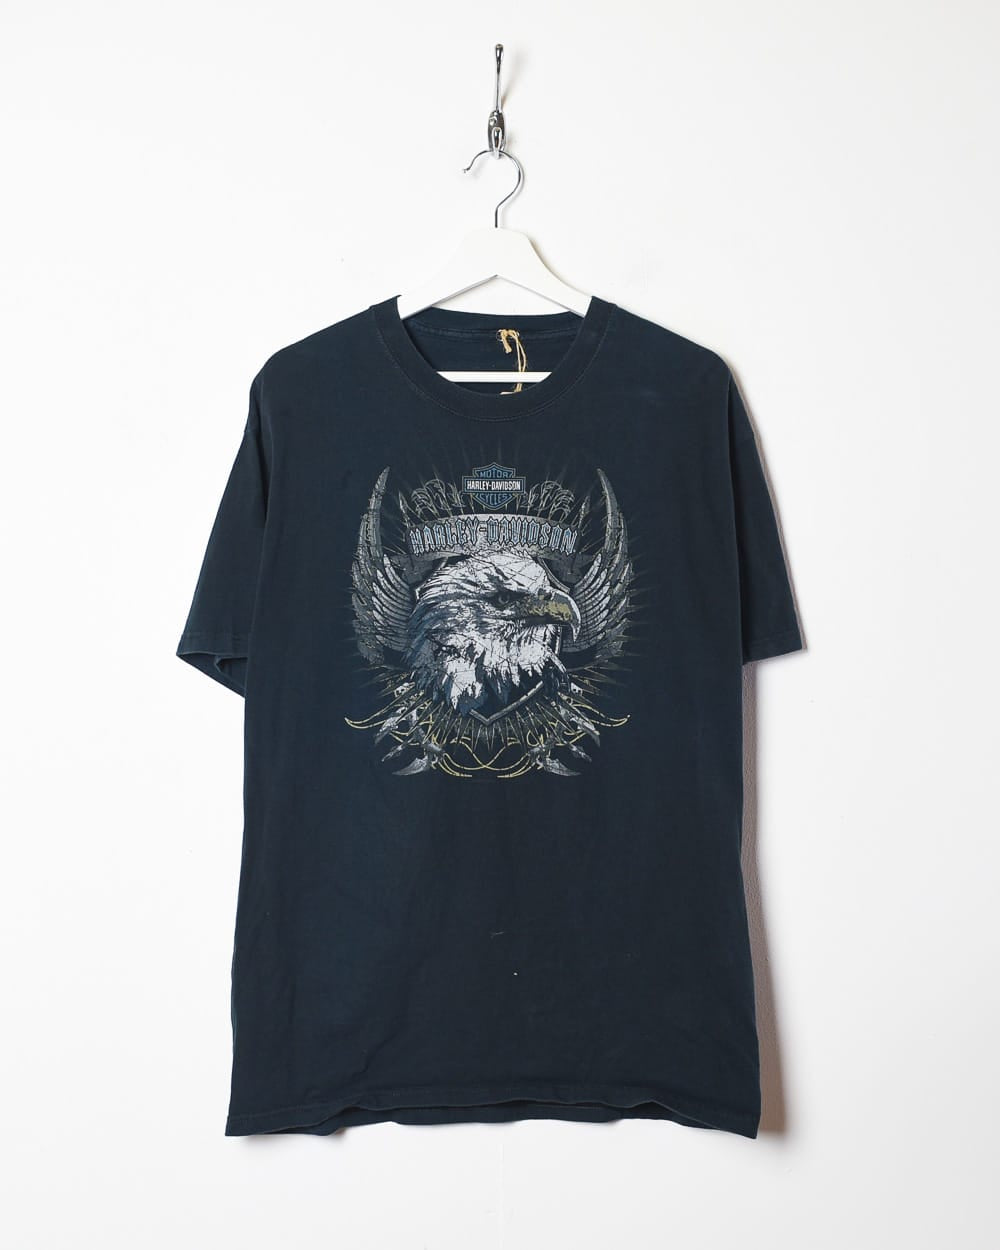 Black Harley Davidson Eagle Graphic T-Shirt - Medium